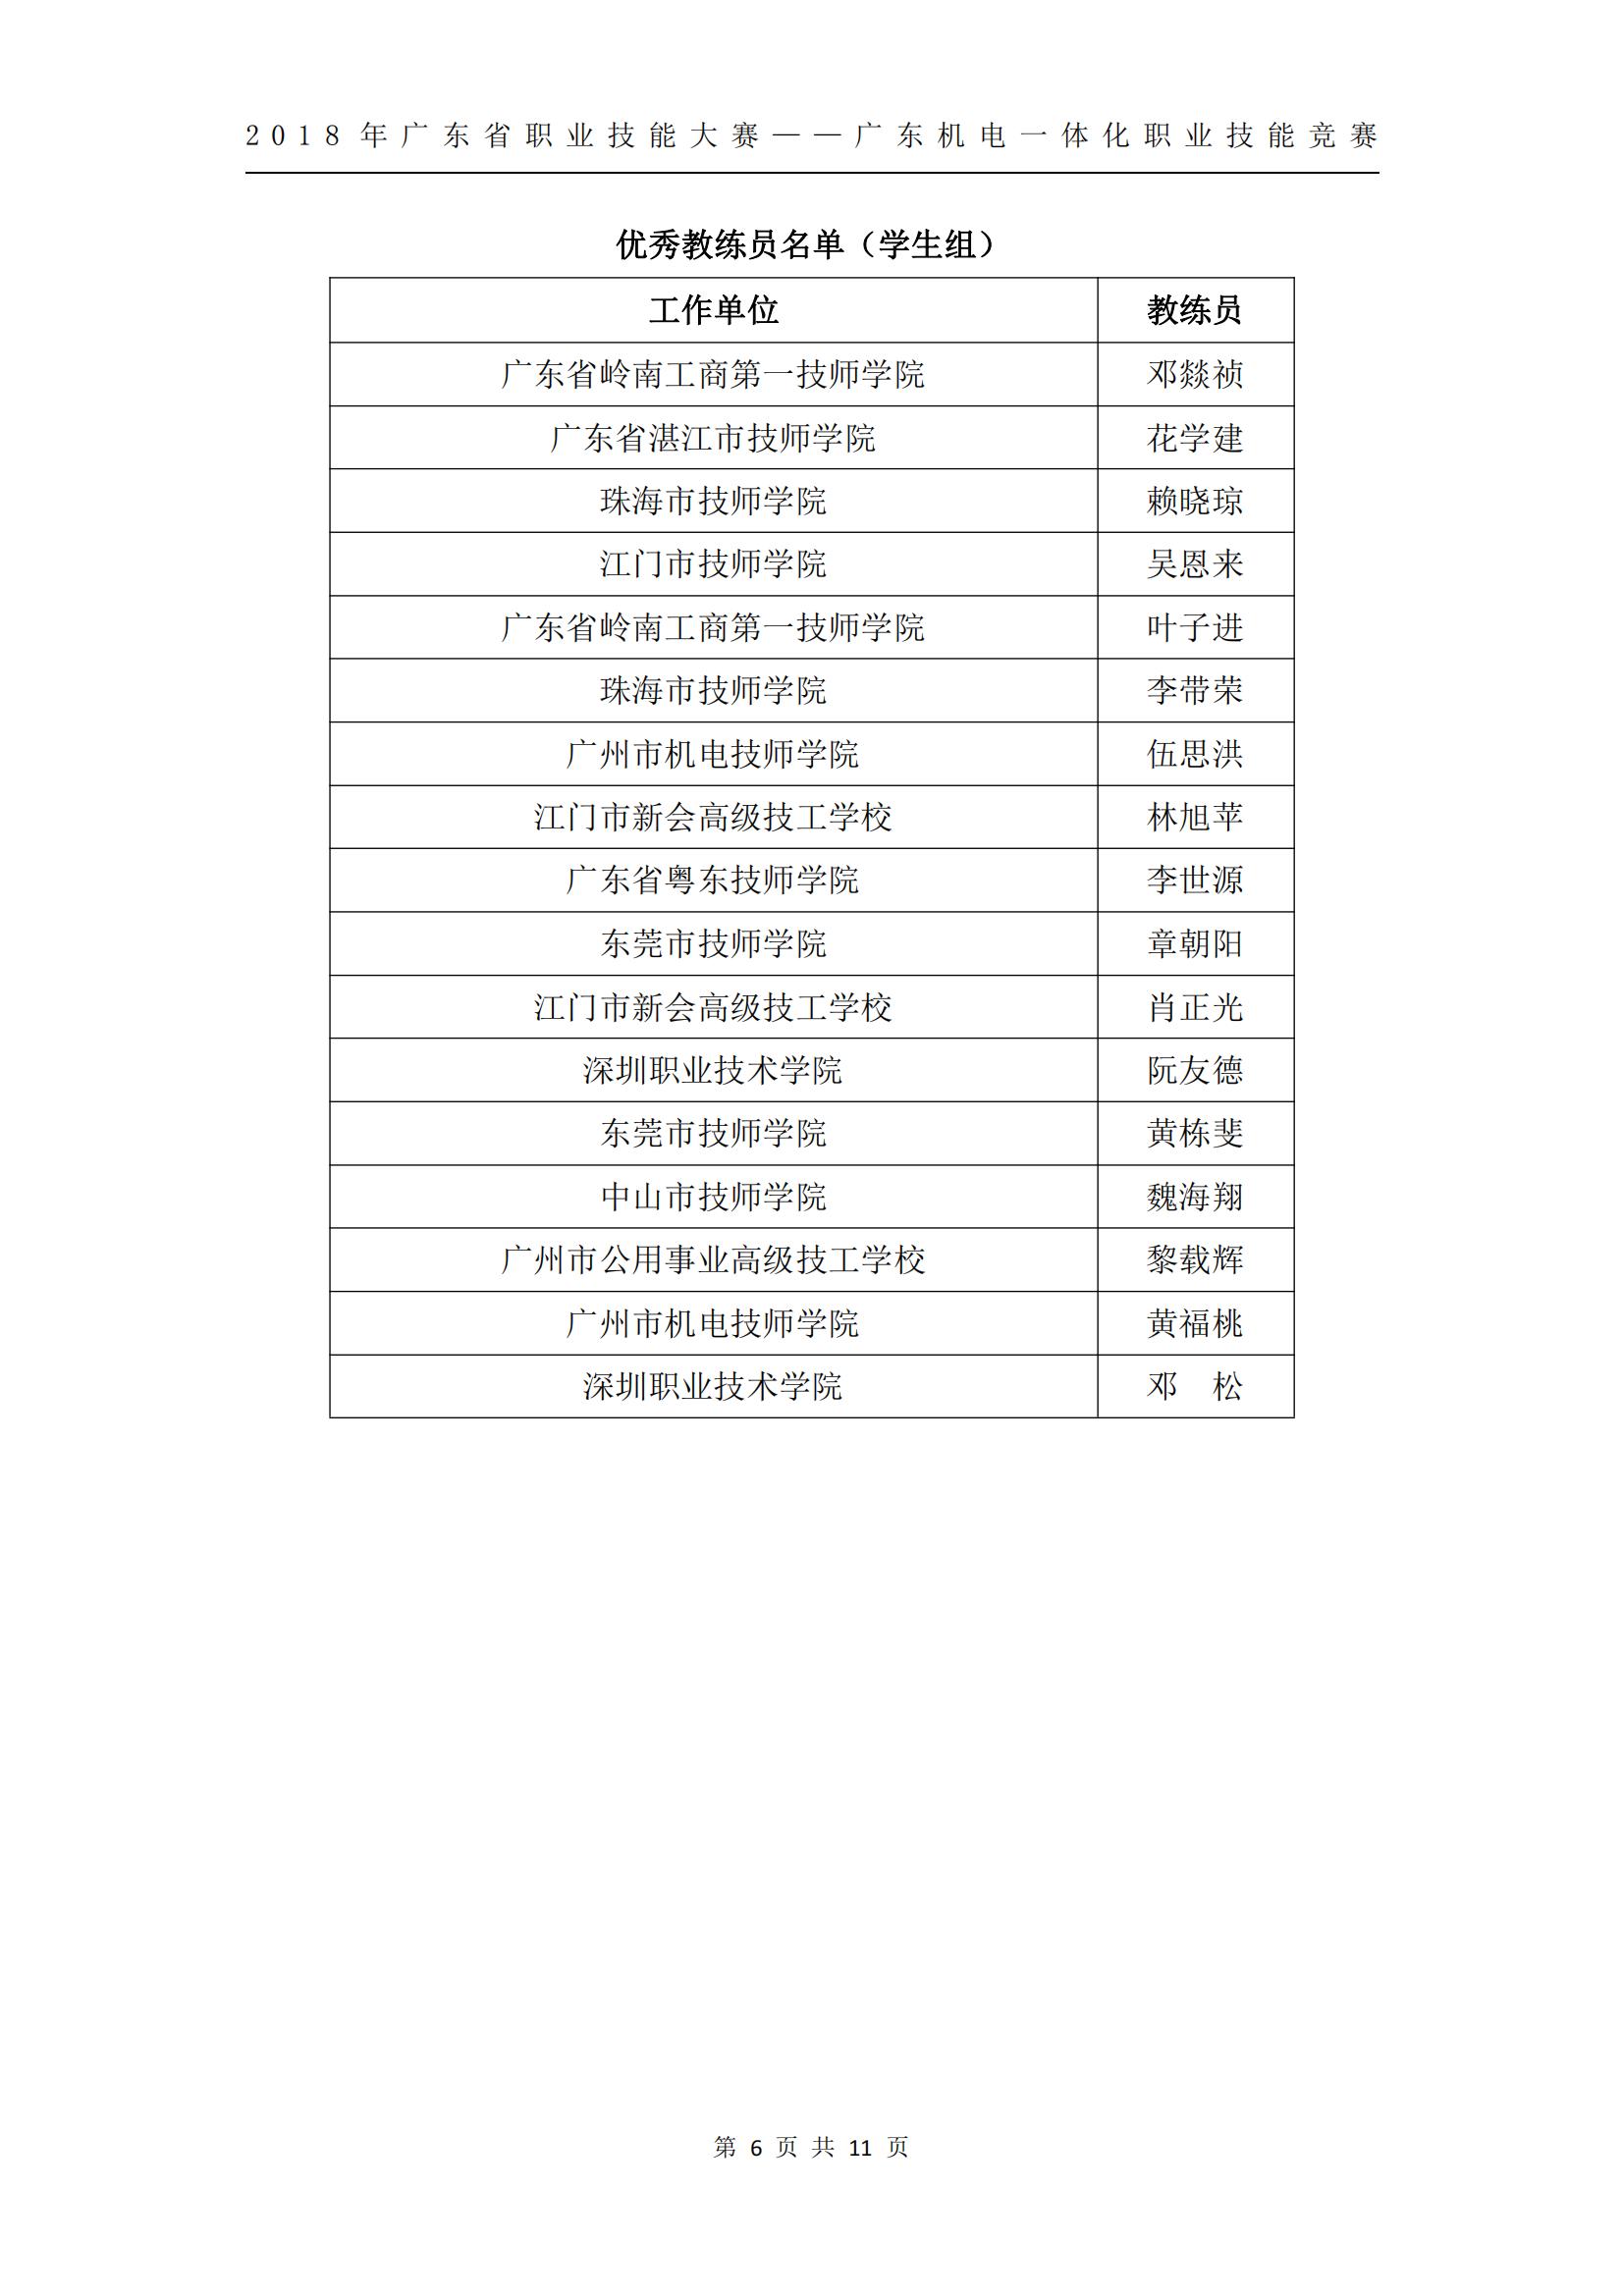 2018 年广东省职业技能大赛——广东机电一体化职业技能竞赛获奖人员和单位公布_05.jpg